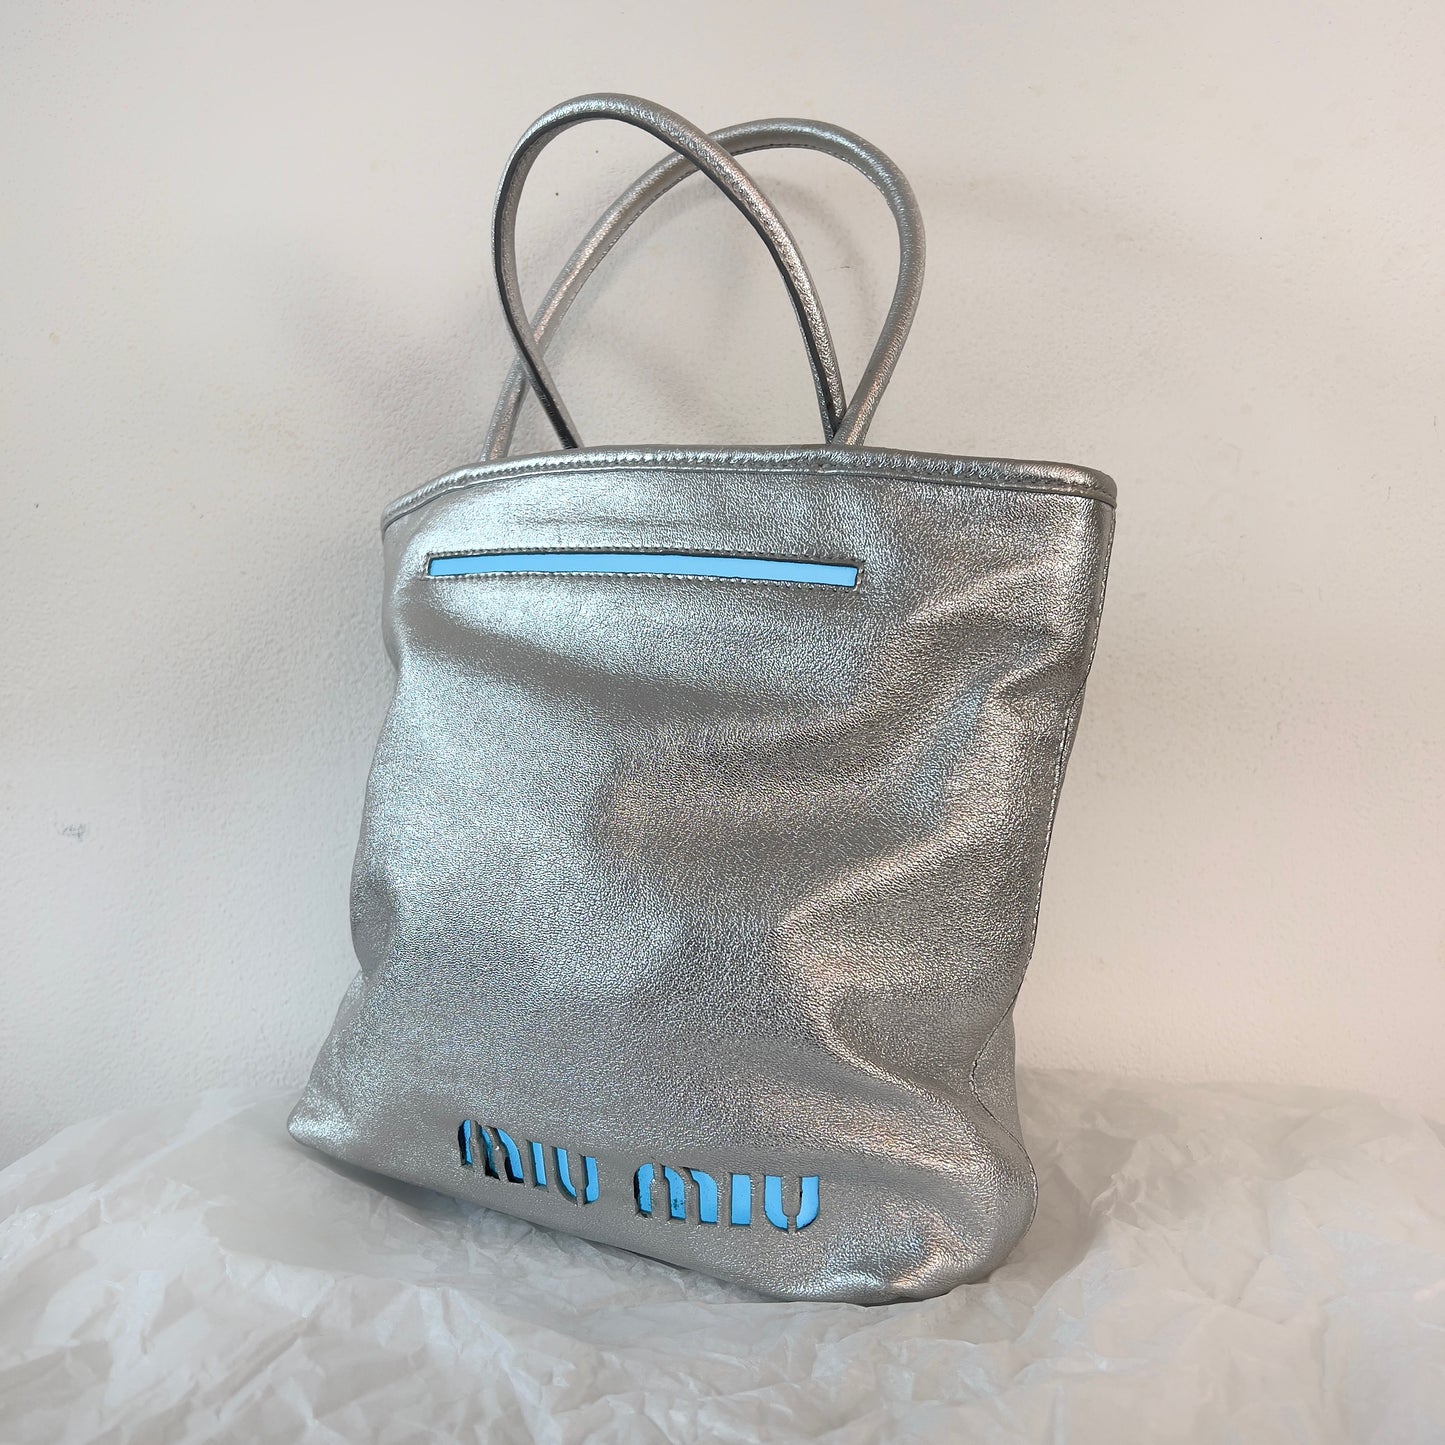 Miu Miu 2001 silver light up bag